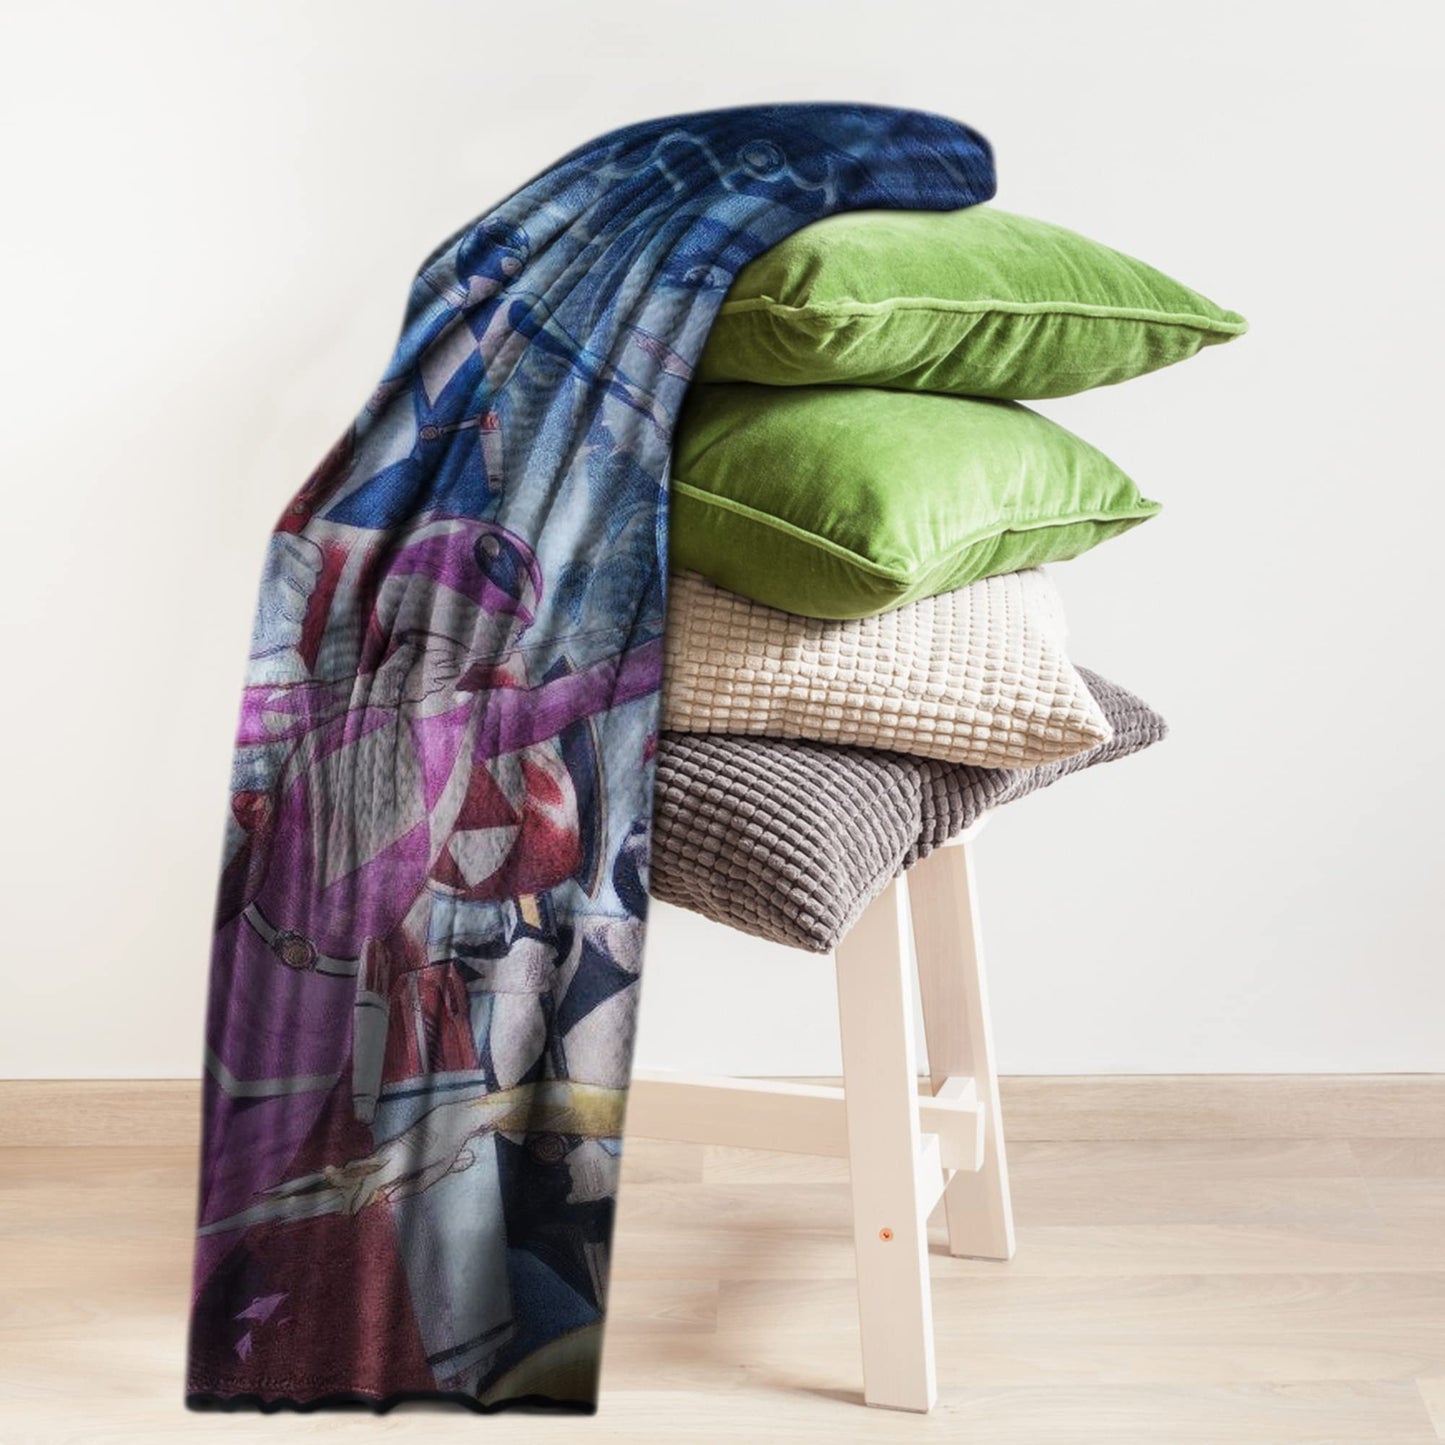 Power Rangers Fleece Fleece Softest Throw Blanket| Measures 60 x 45 Inches